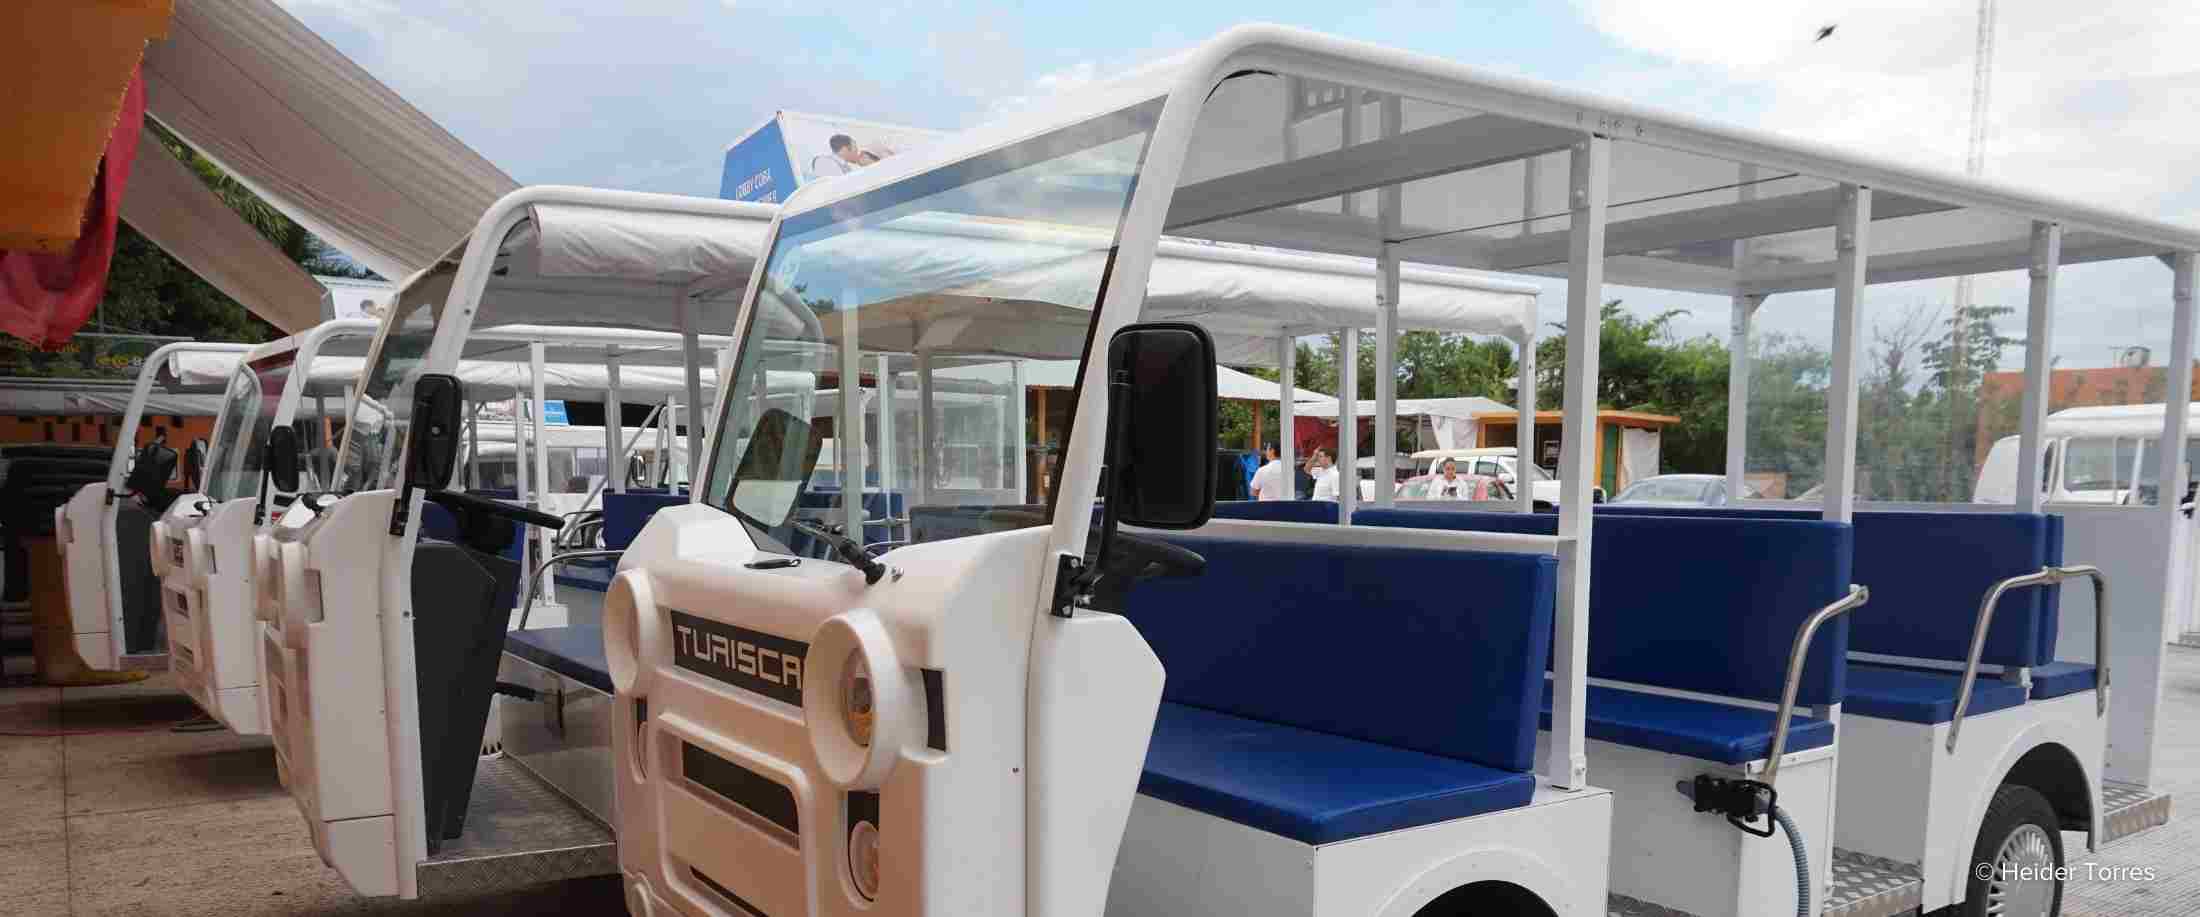 New electric carts await guests at Bahia Principe Hotels in Riviera Maya